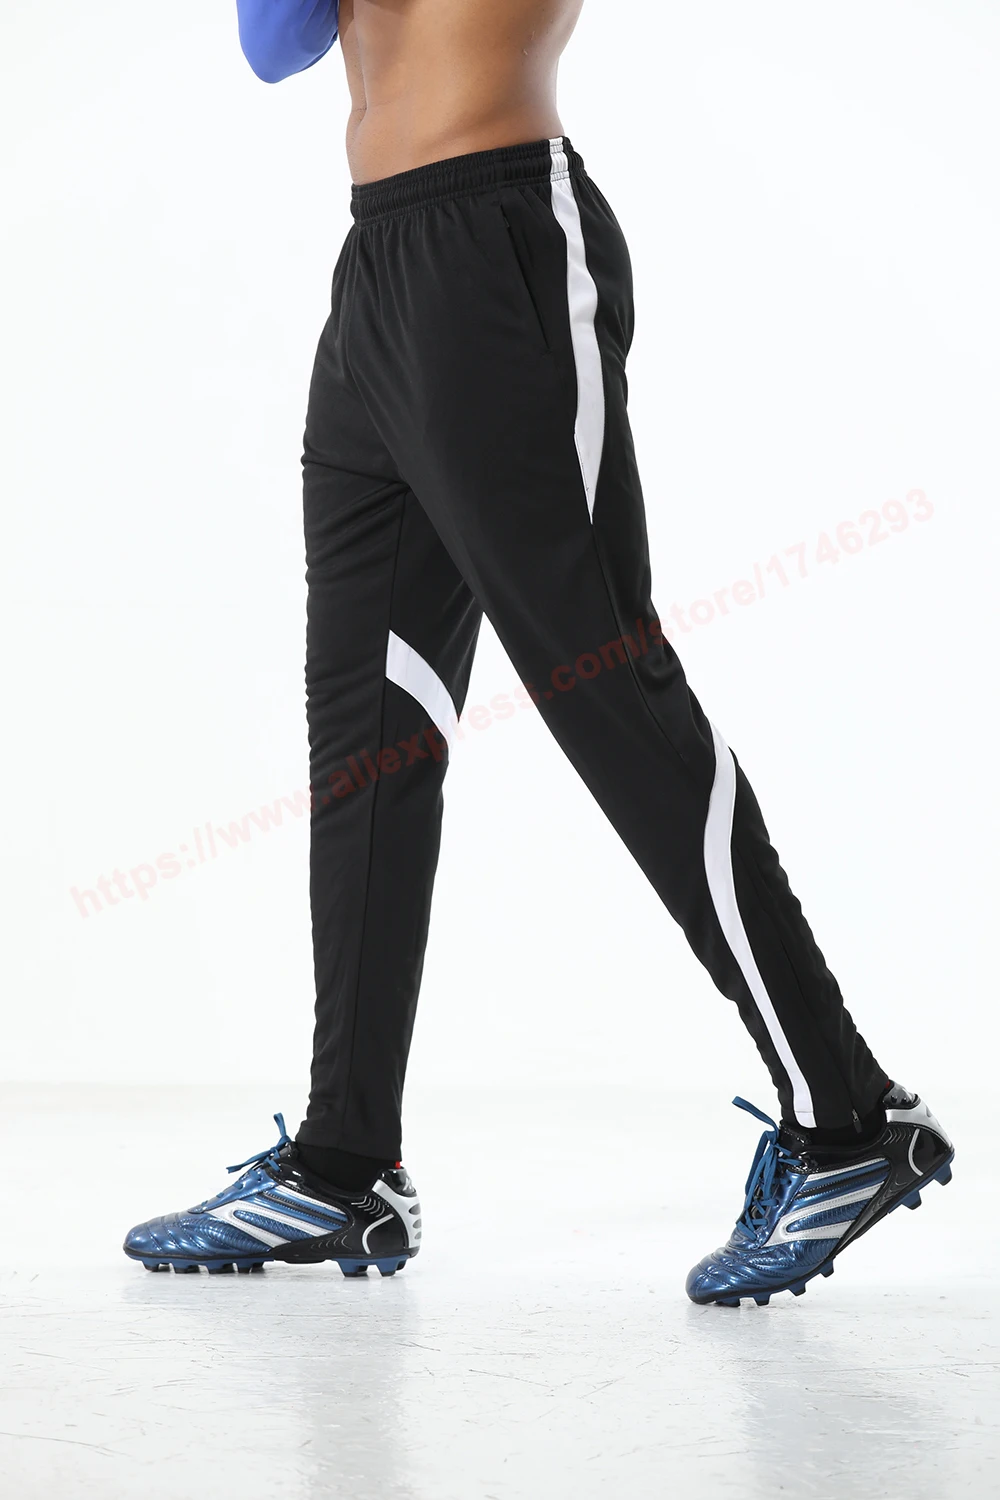 Мужские футбольные штаны на молнии, тренировочные штаны для футбола, бега, спортзала, уличные штаны, спортивные штаны для велоспорта и тренировок